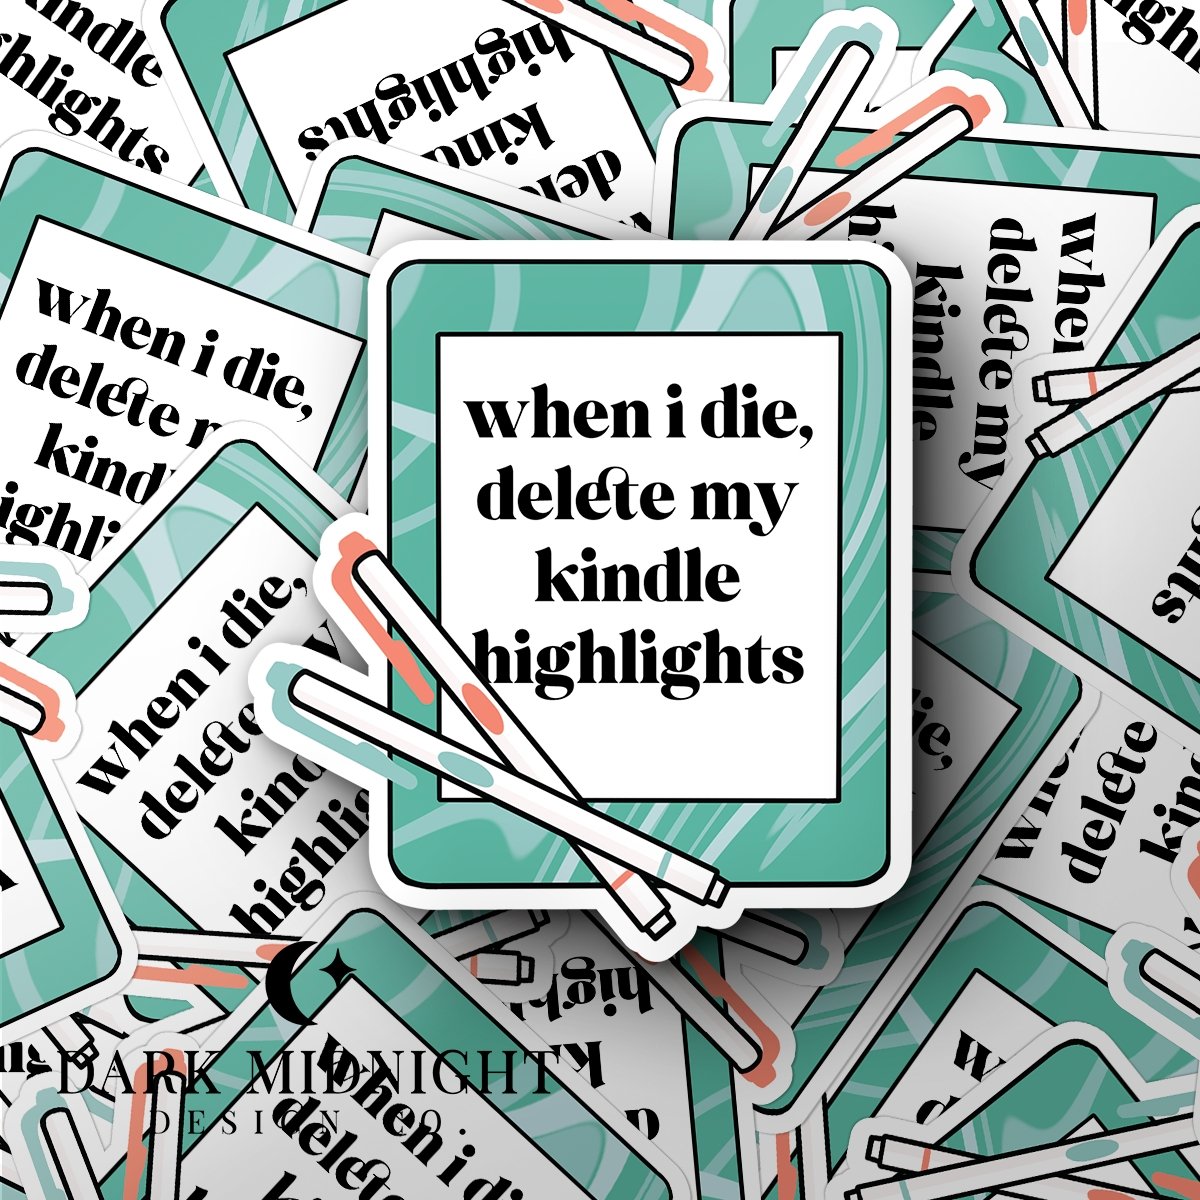 When I Die, Delete My Kindle Highlights - Bookish Annotation Sticker - Dark Midnight Design Co